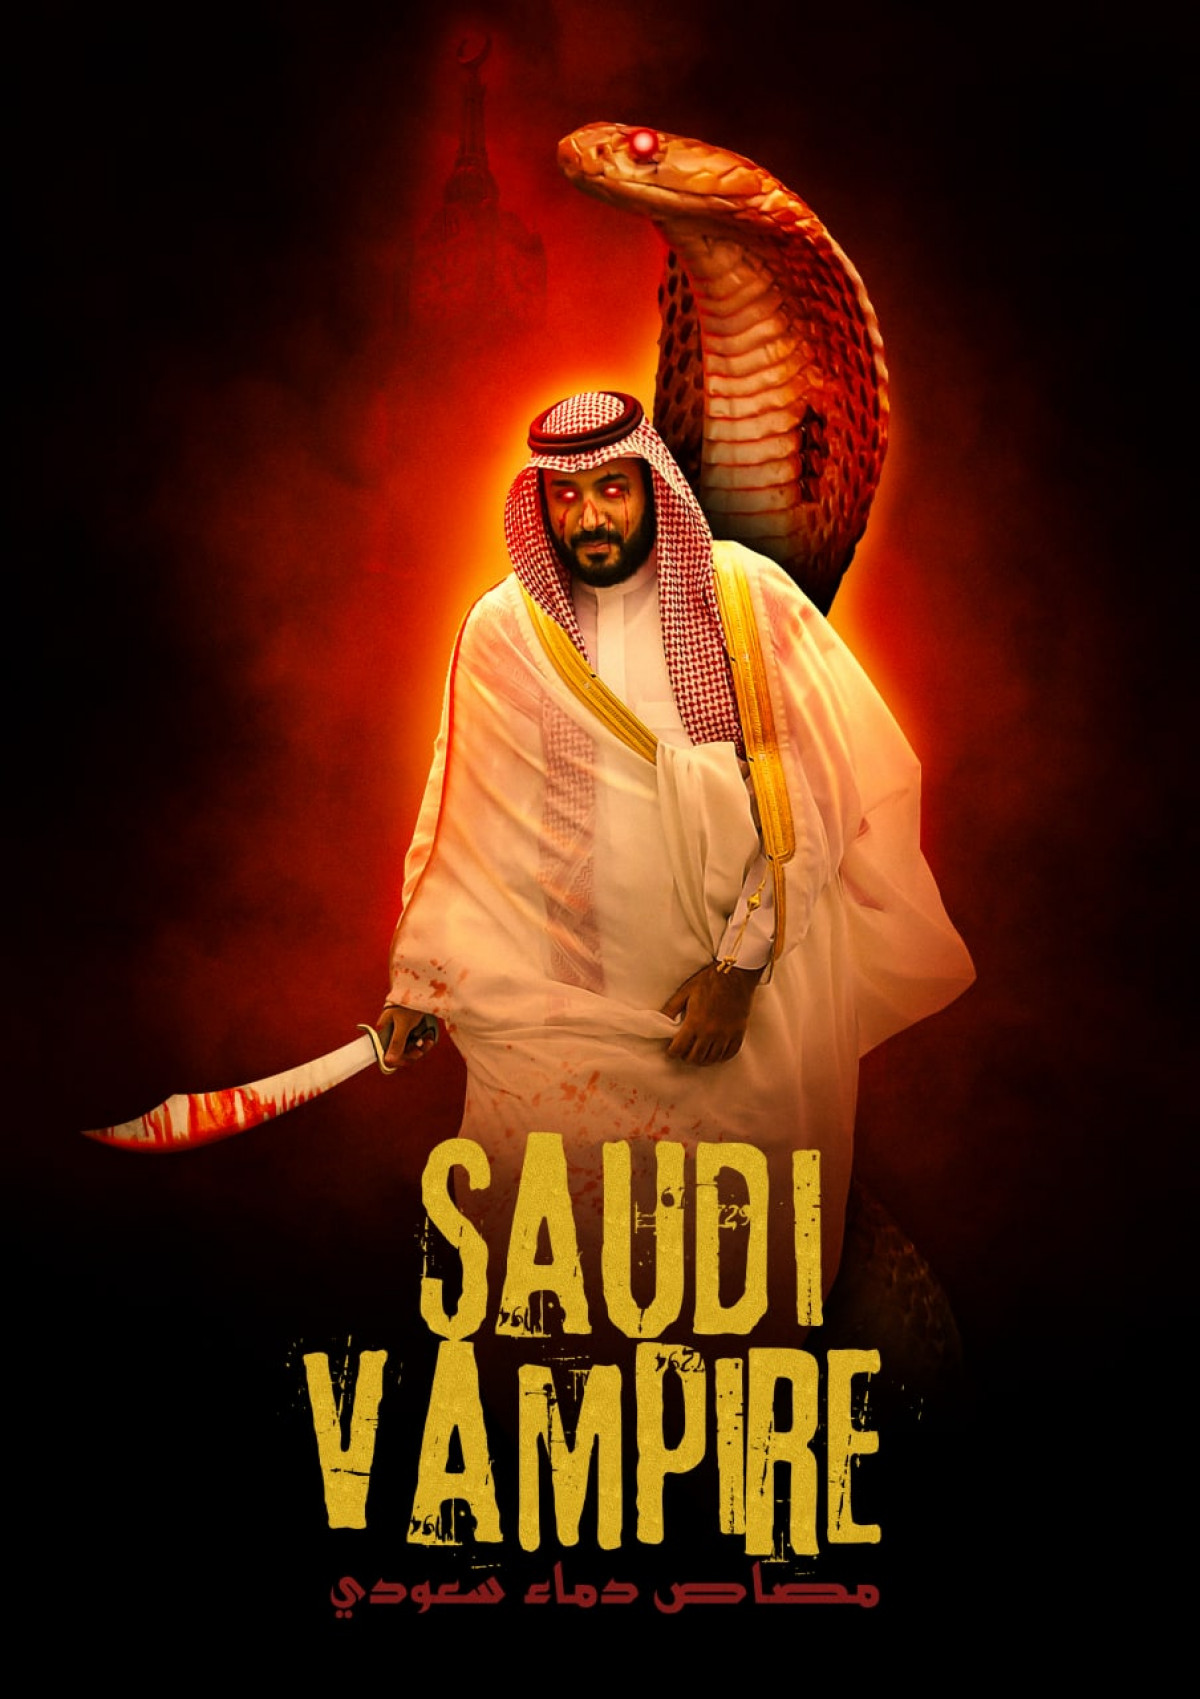 Saudi vampire